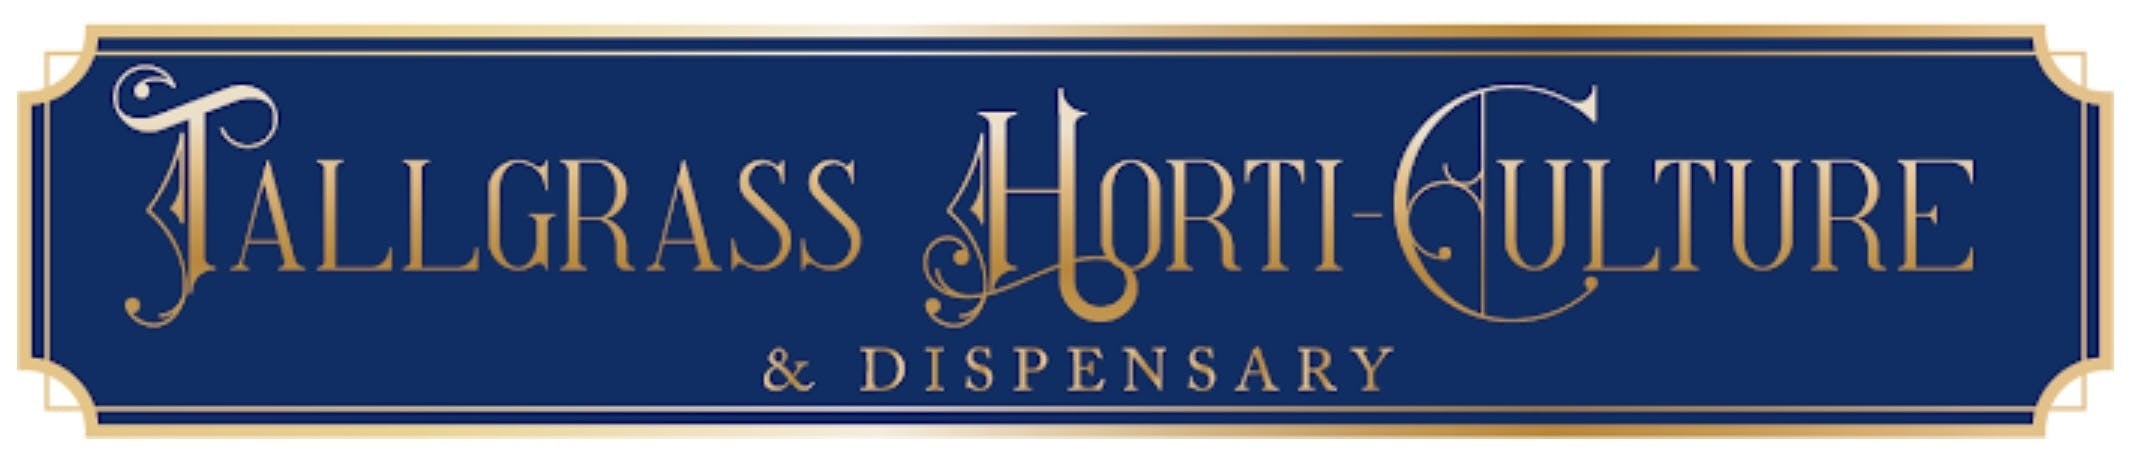 Tallgrass Horti-Culture & Dispensary logo